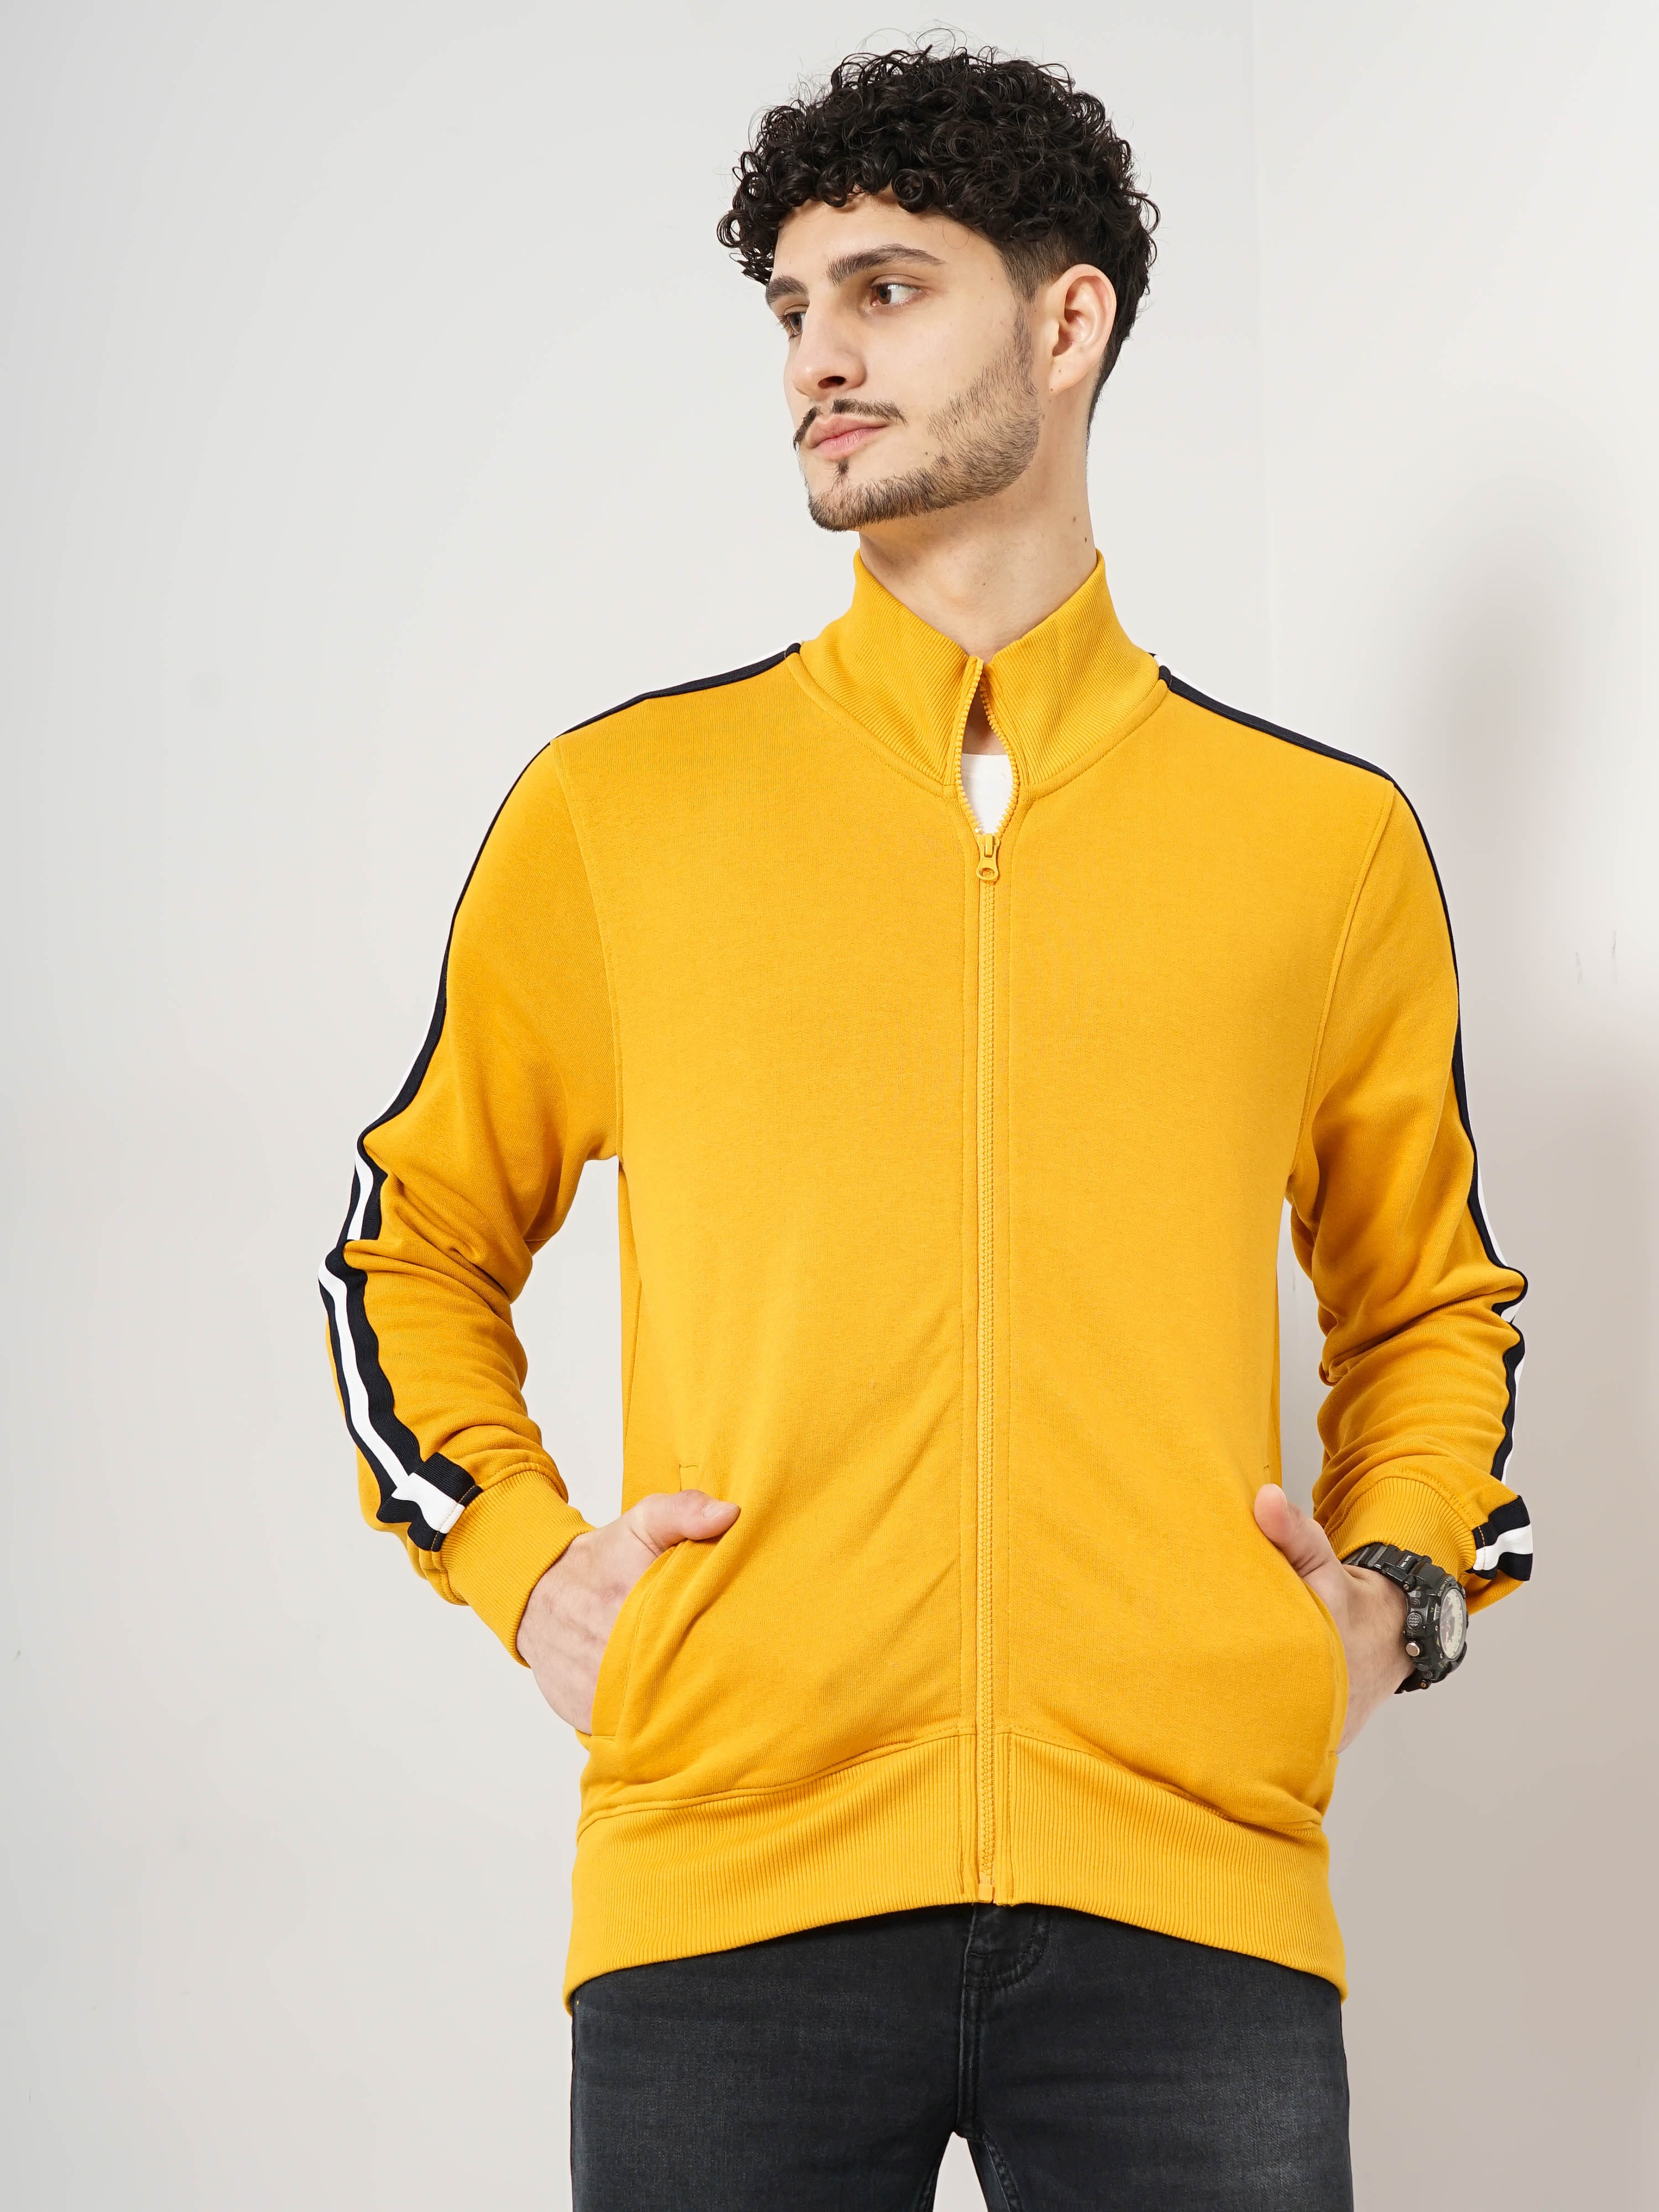 Celio Men's solid Yellow Full Sleeve Sweatshirt